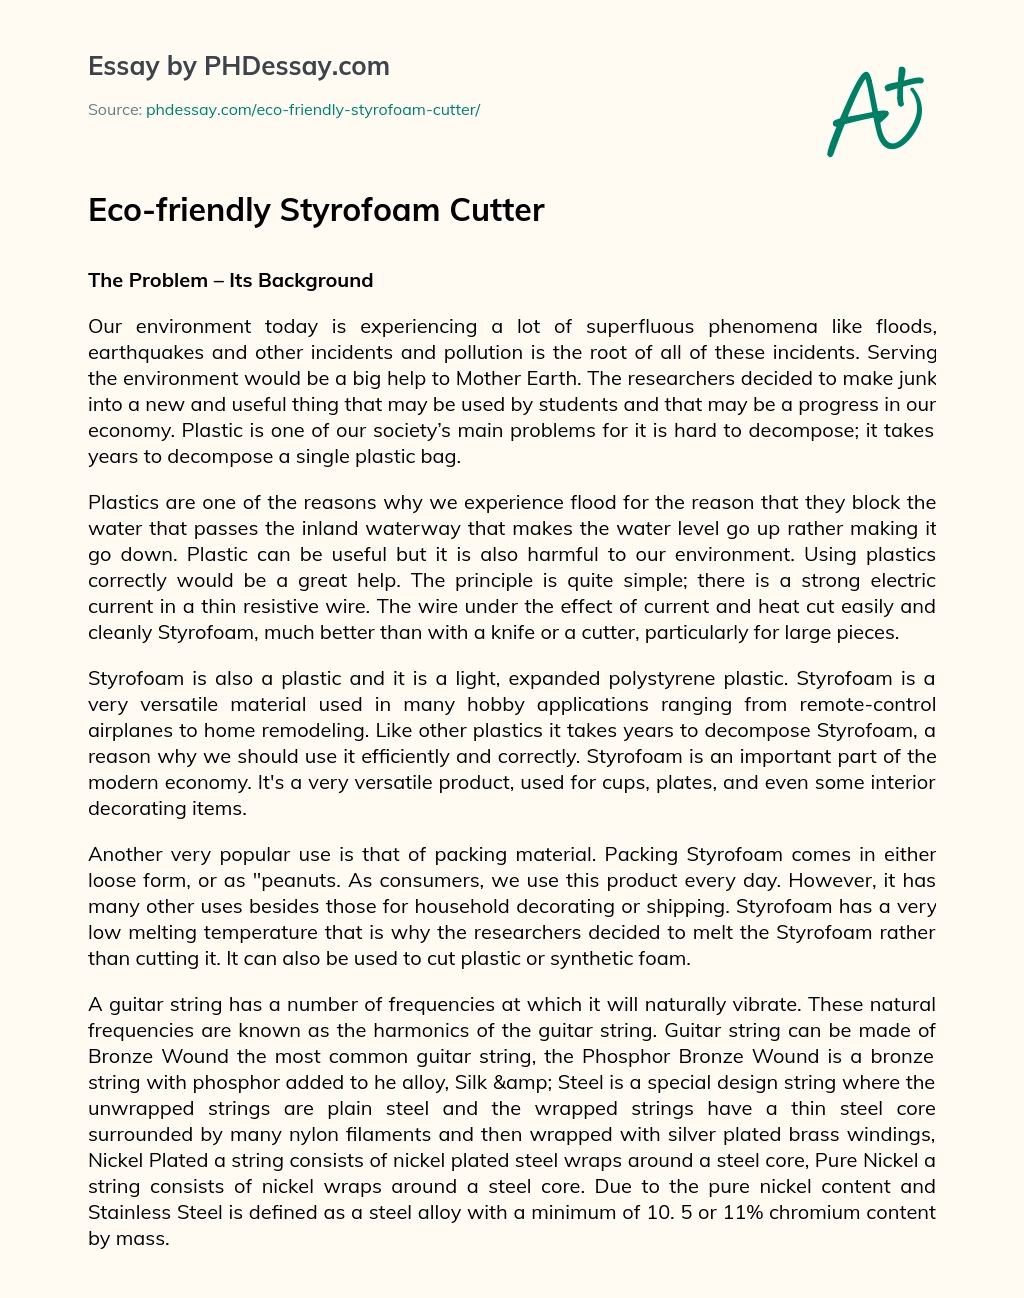 Eco-friendly Styrofoam Cutter essay